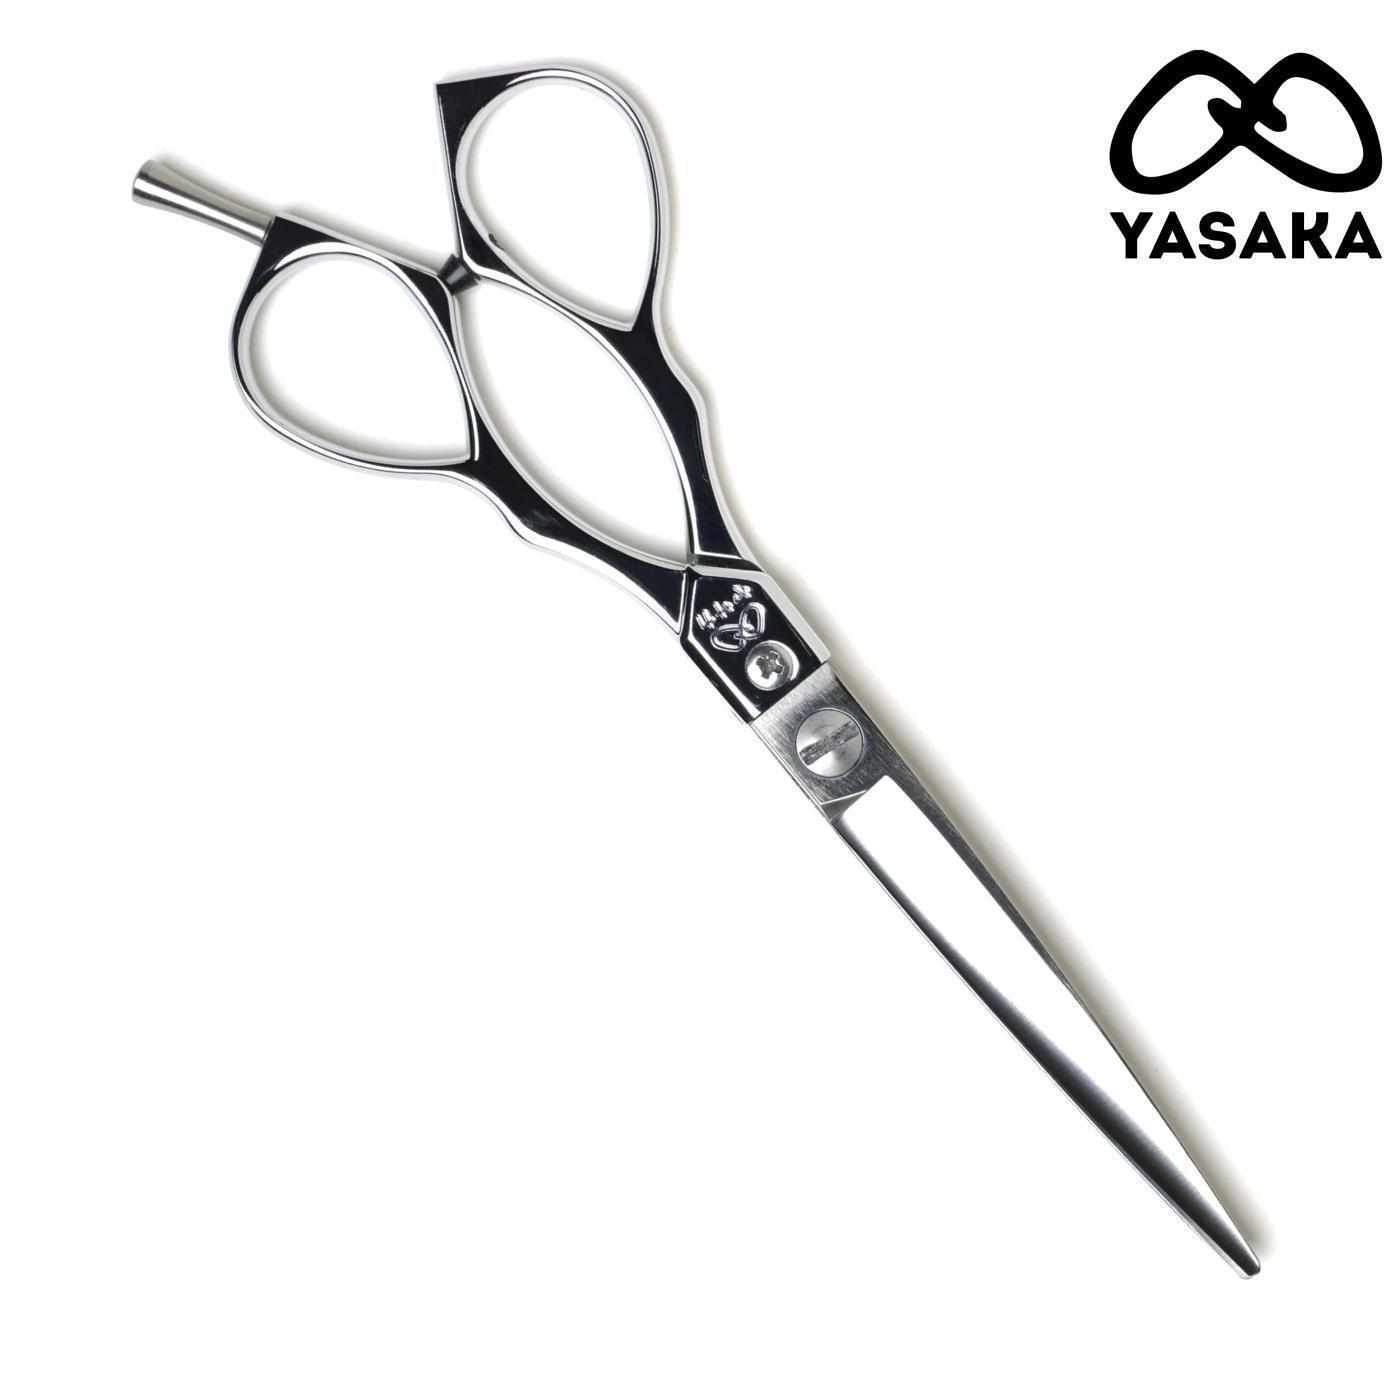 Yasaka L-65 Scissors